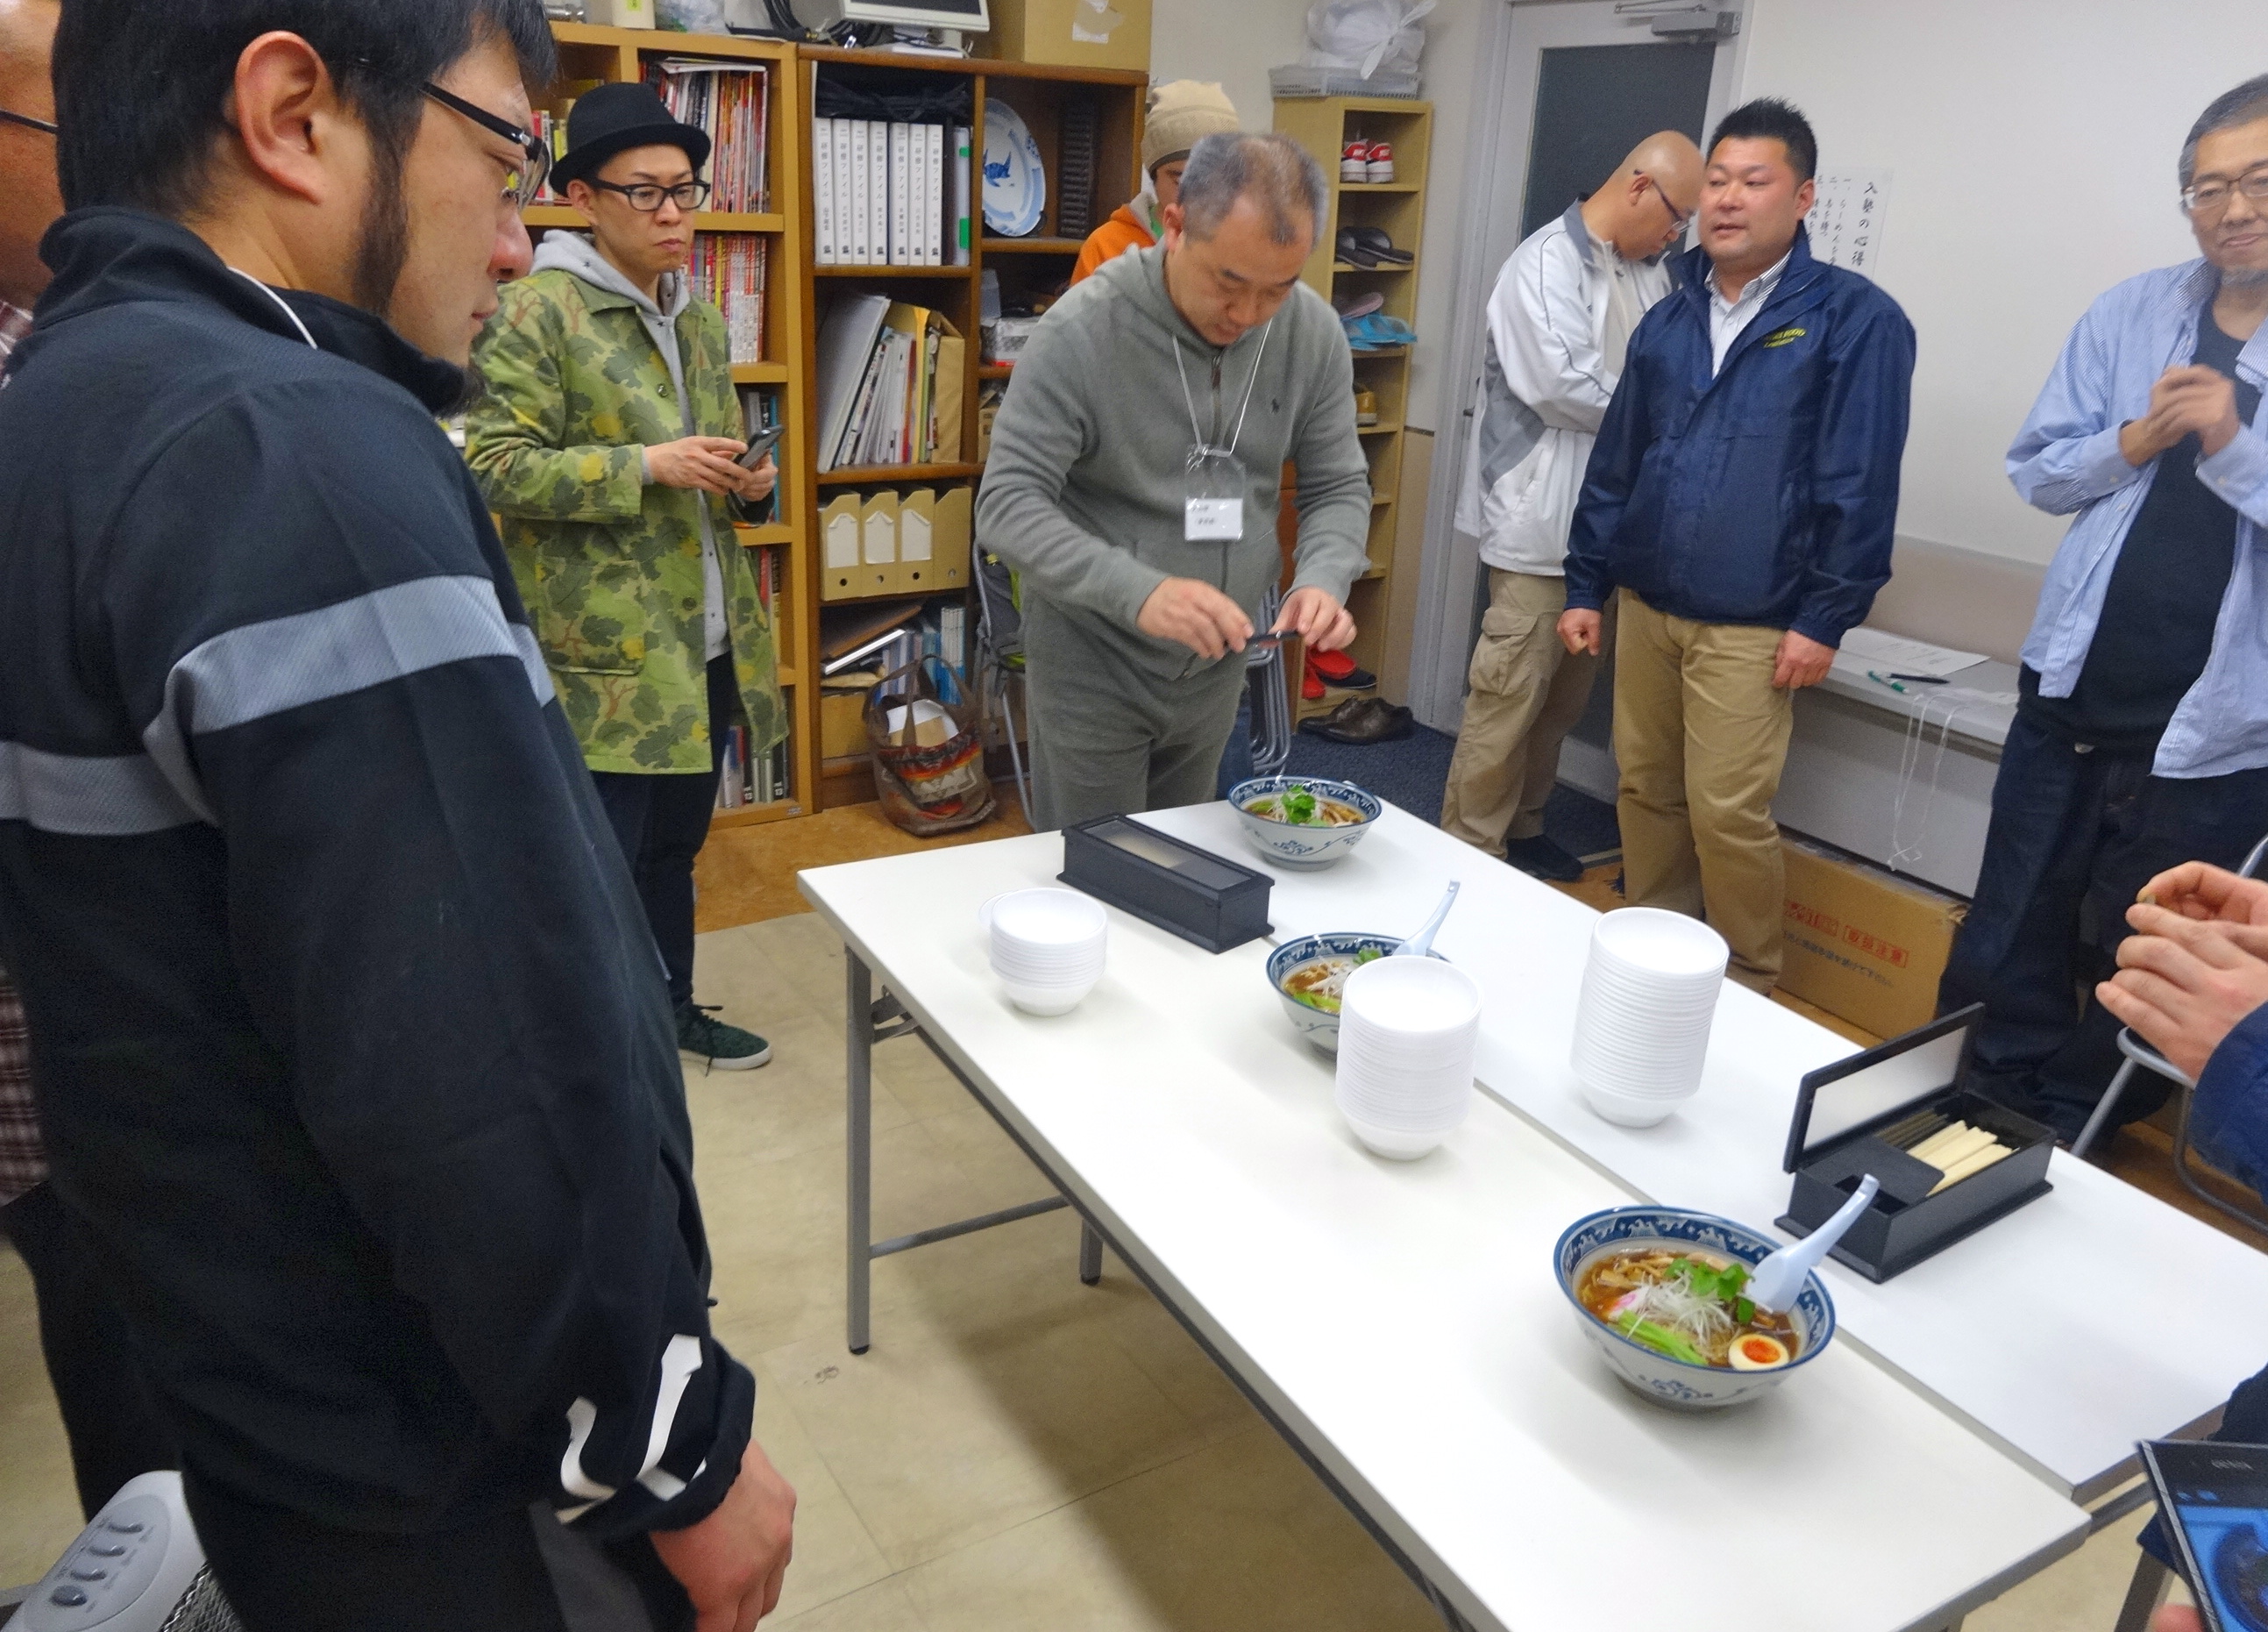 2014年3月の“麺”夢塾。北島秀一さんは講演後、新商品試食会にも出席してくださいました。